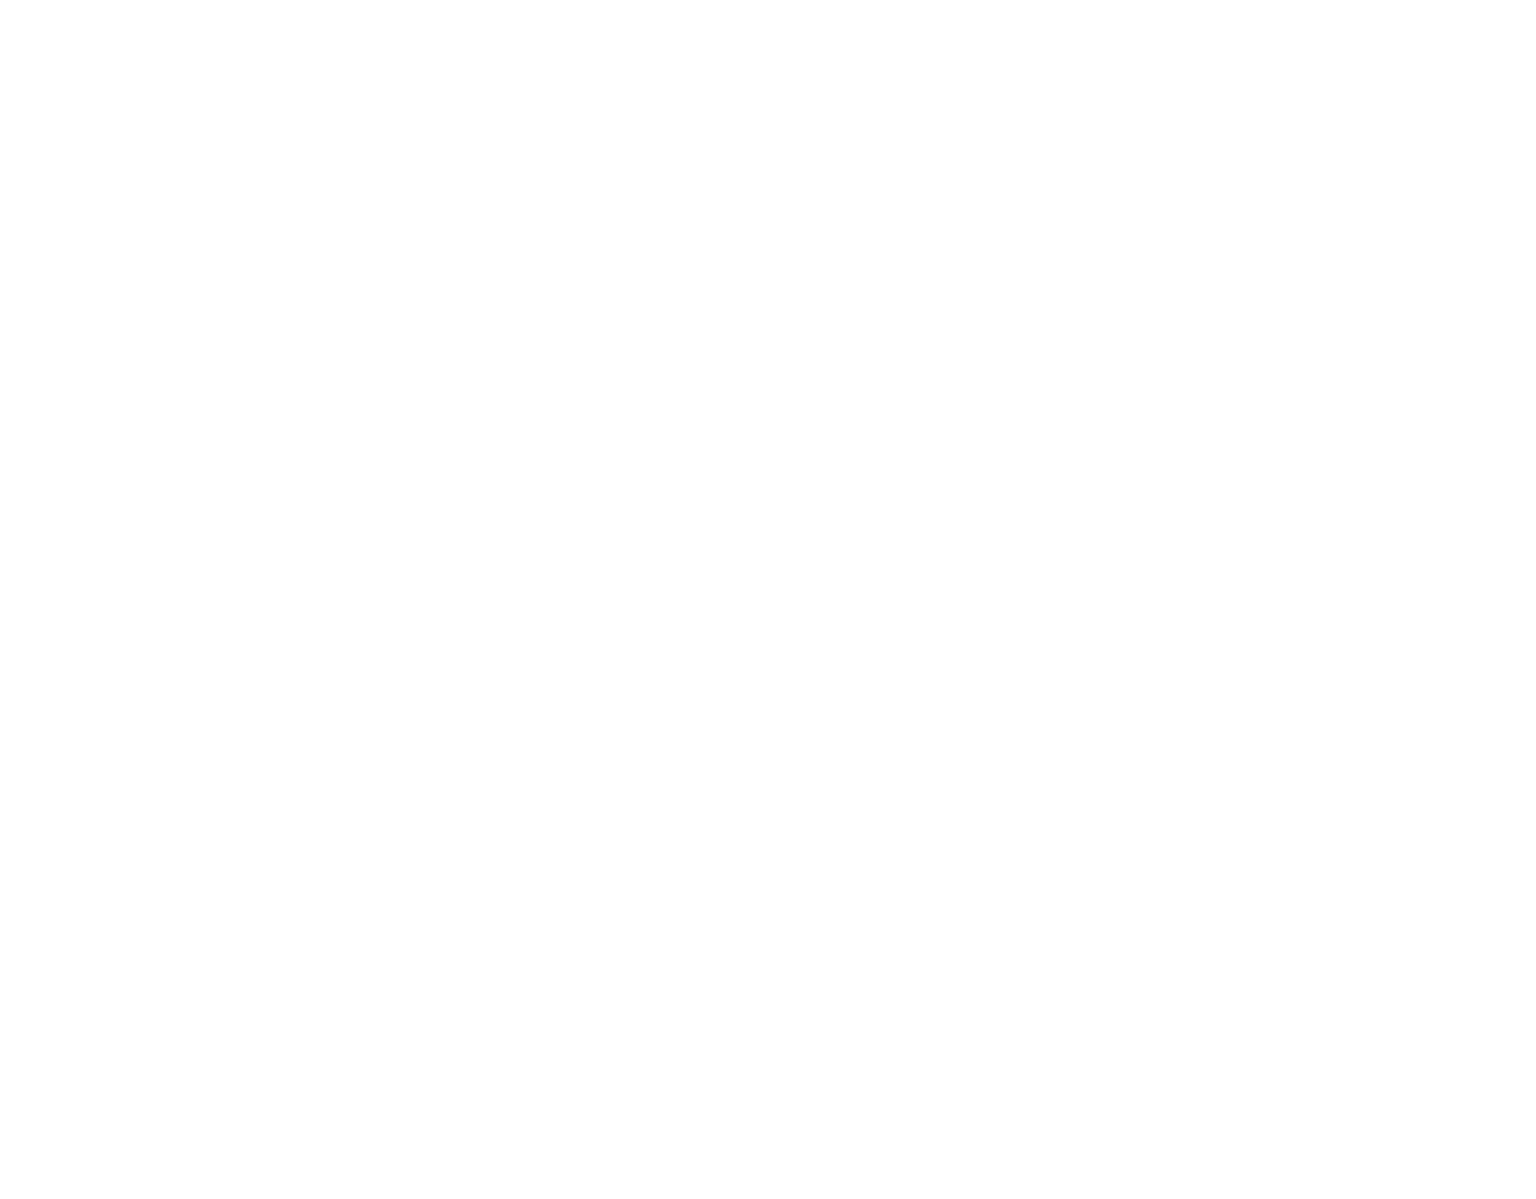 815 Media - LaSalle's Premier Marketing Agency